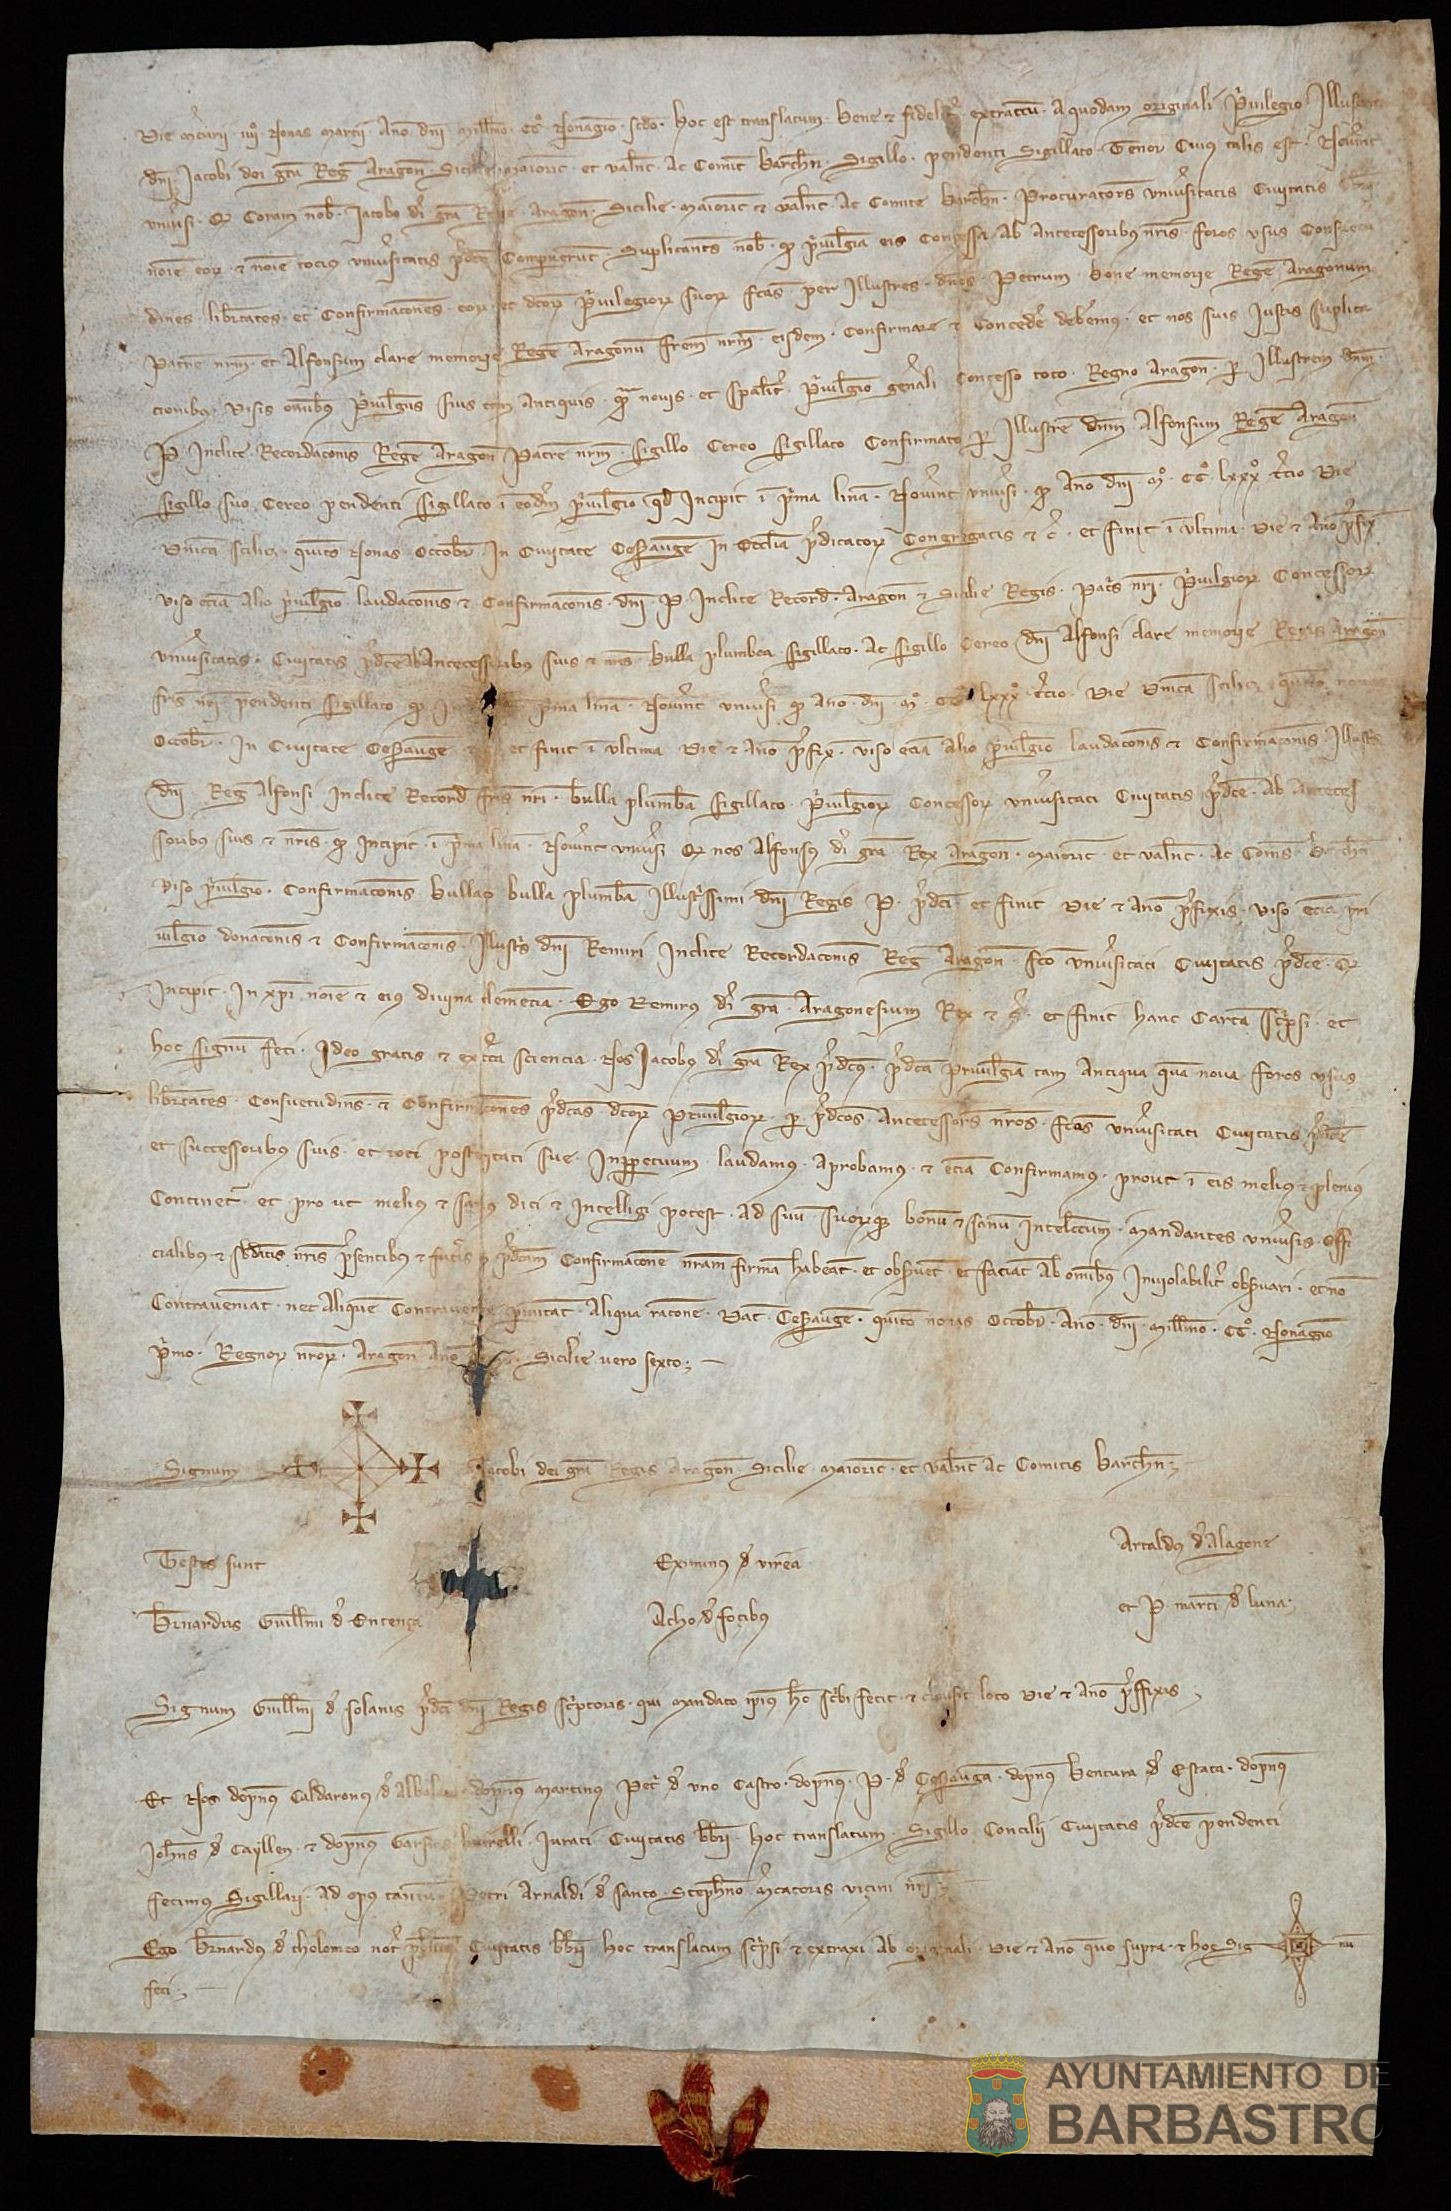 Jaime II de Aragón confirma los privilegios y fueros concedidos por sus antecesores a los habitantes de Barbastro con especial mención al Privilegio General otorgado por Pedro III en 1283